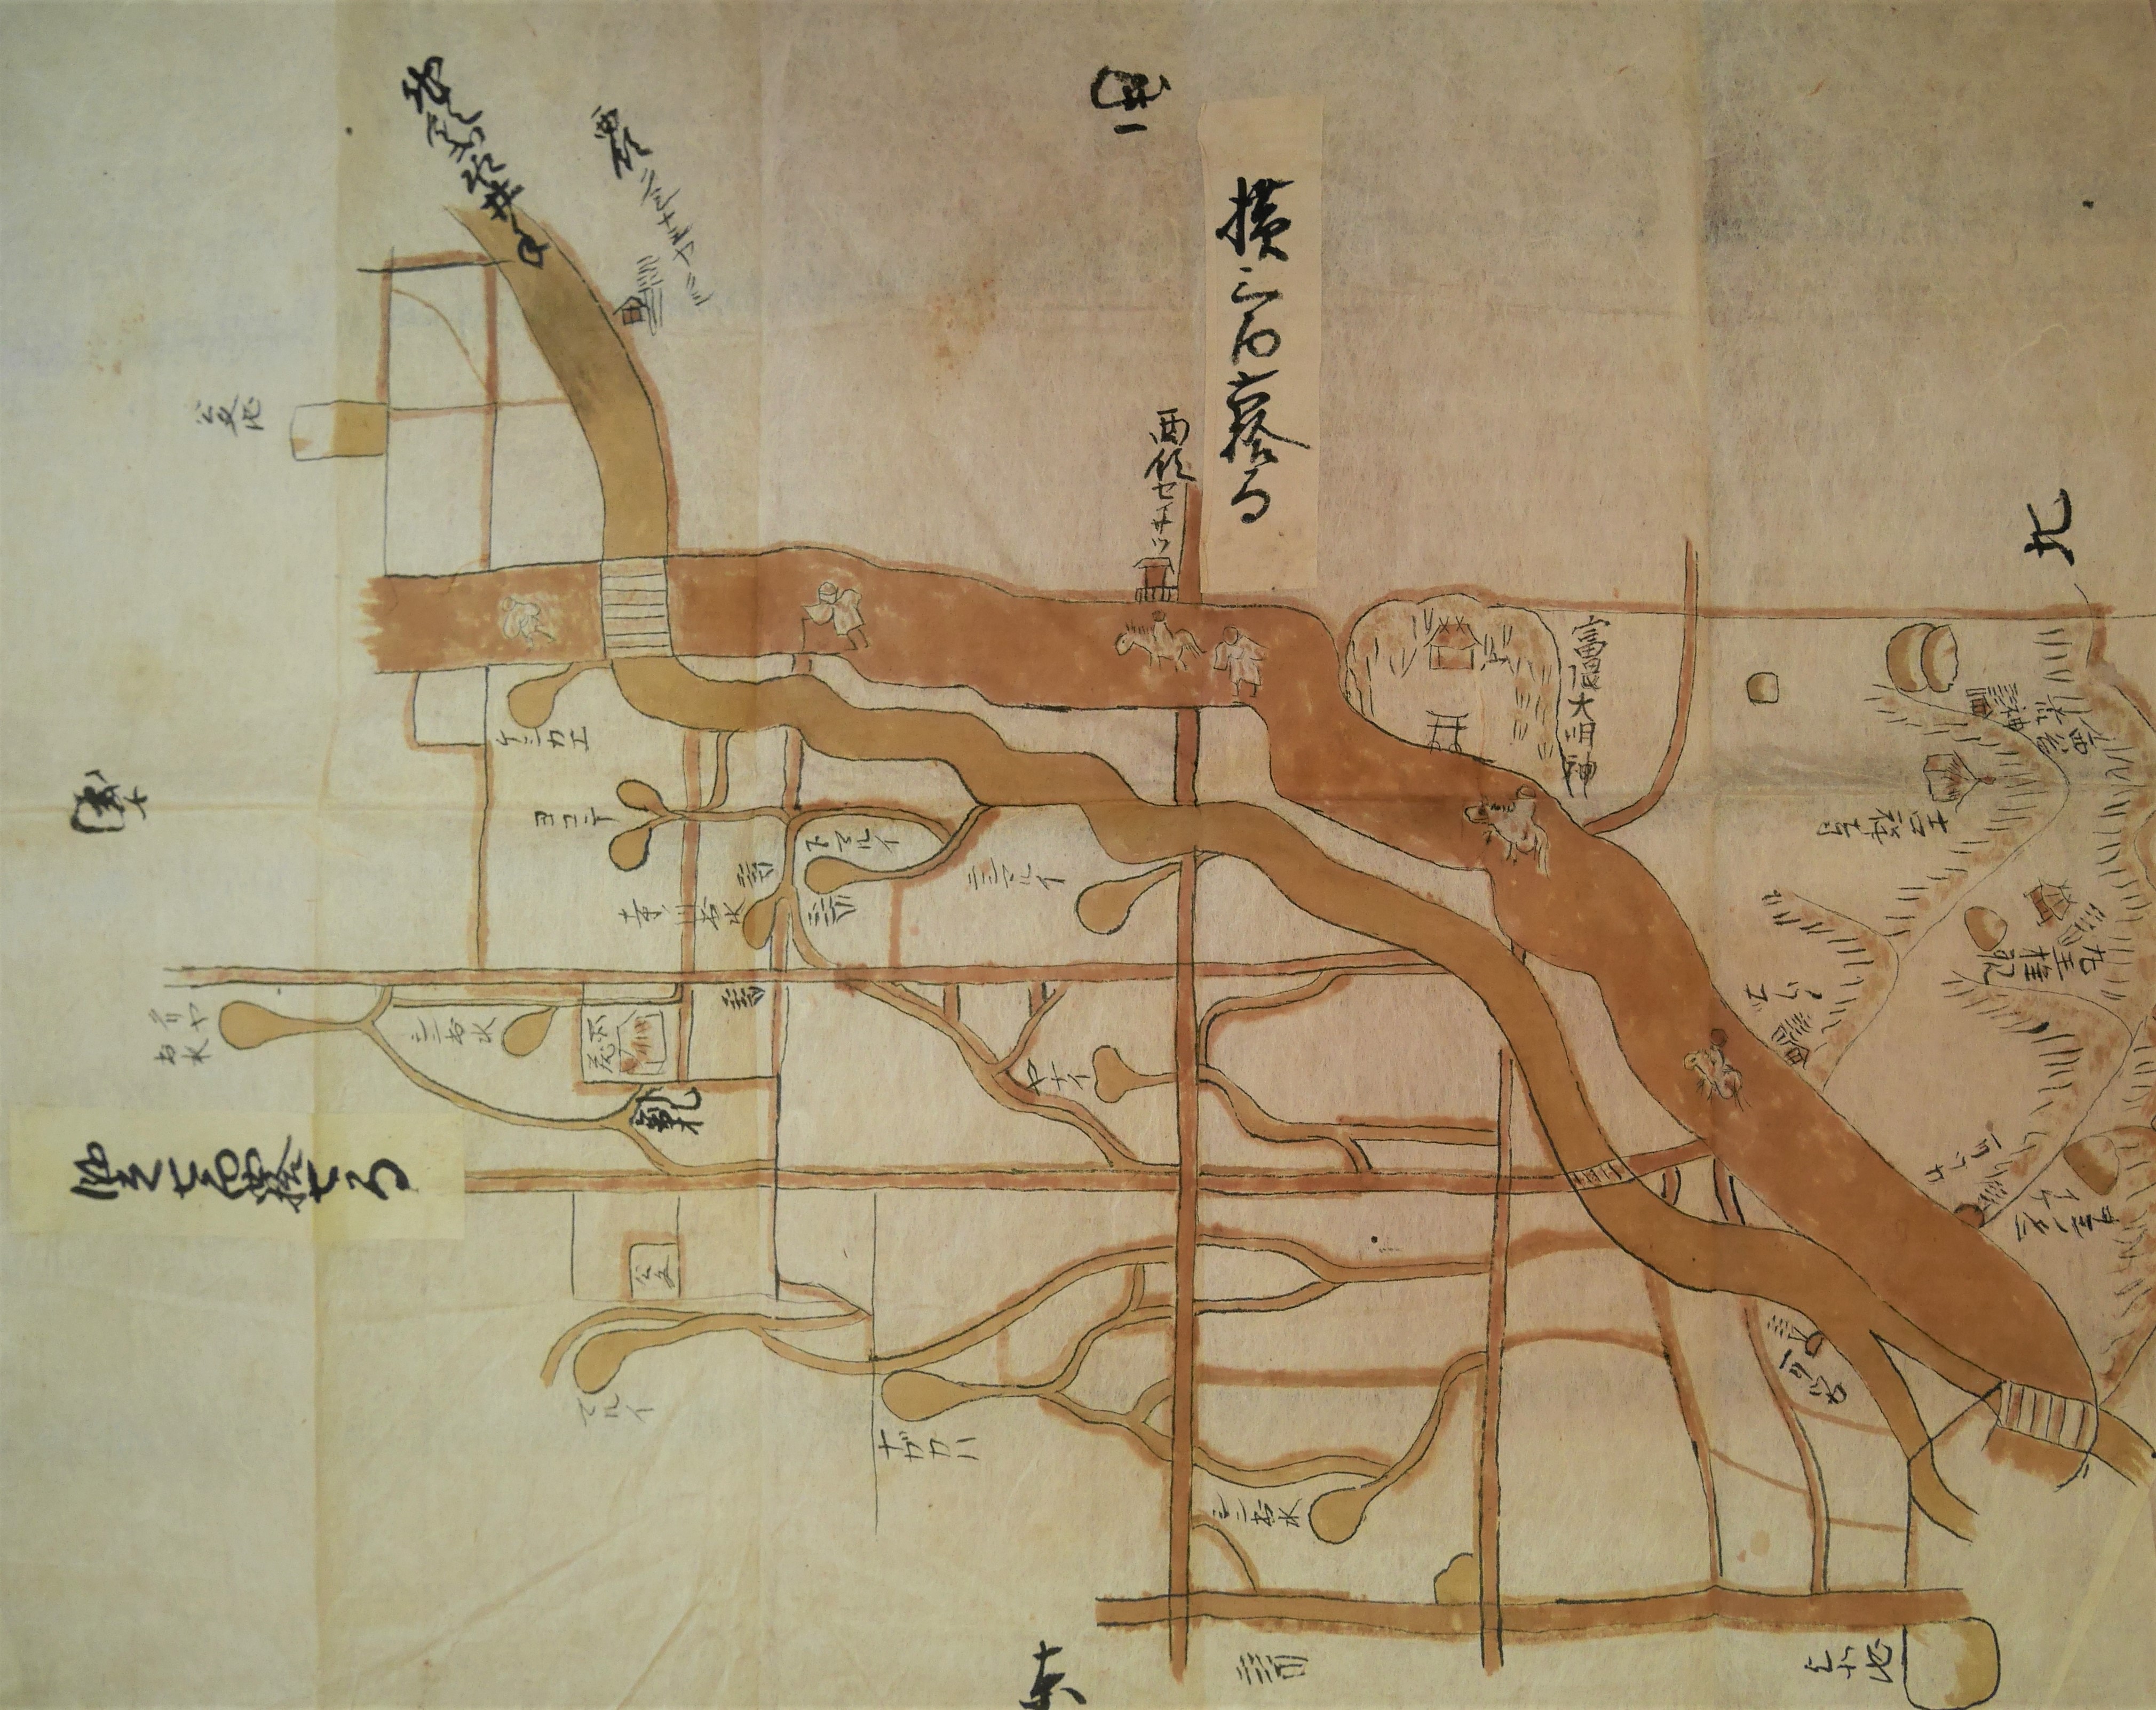 まんのう町公文周辺の出水群が描かれた絵図江戸時代香川県立ミュージアム蔵